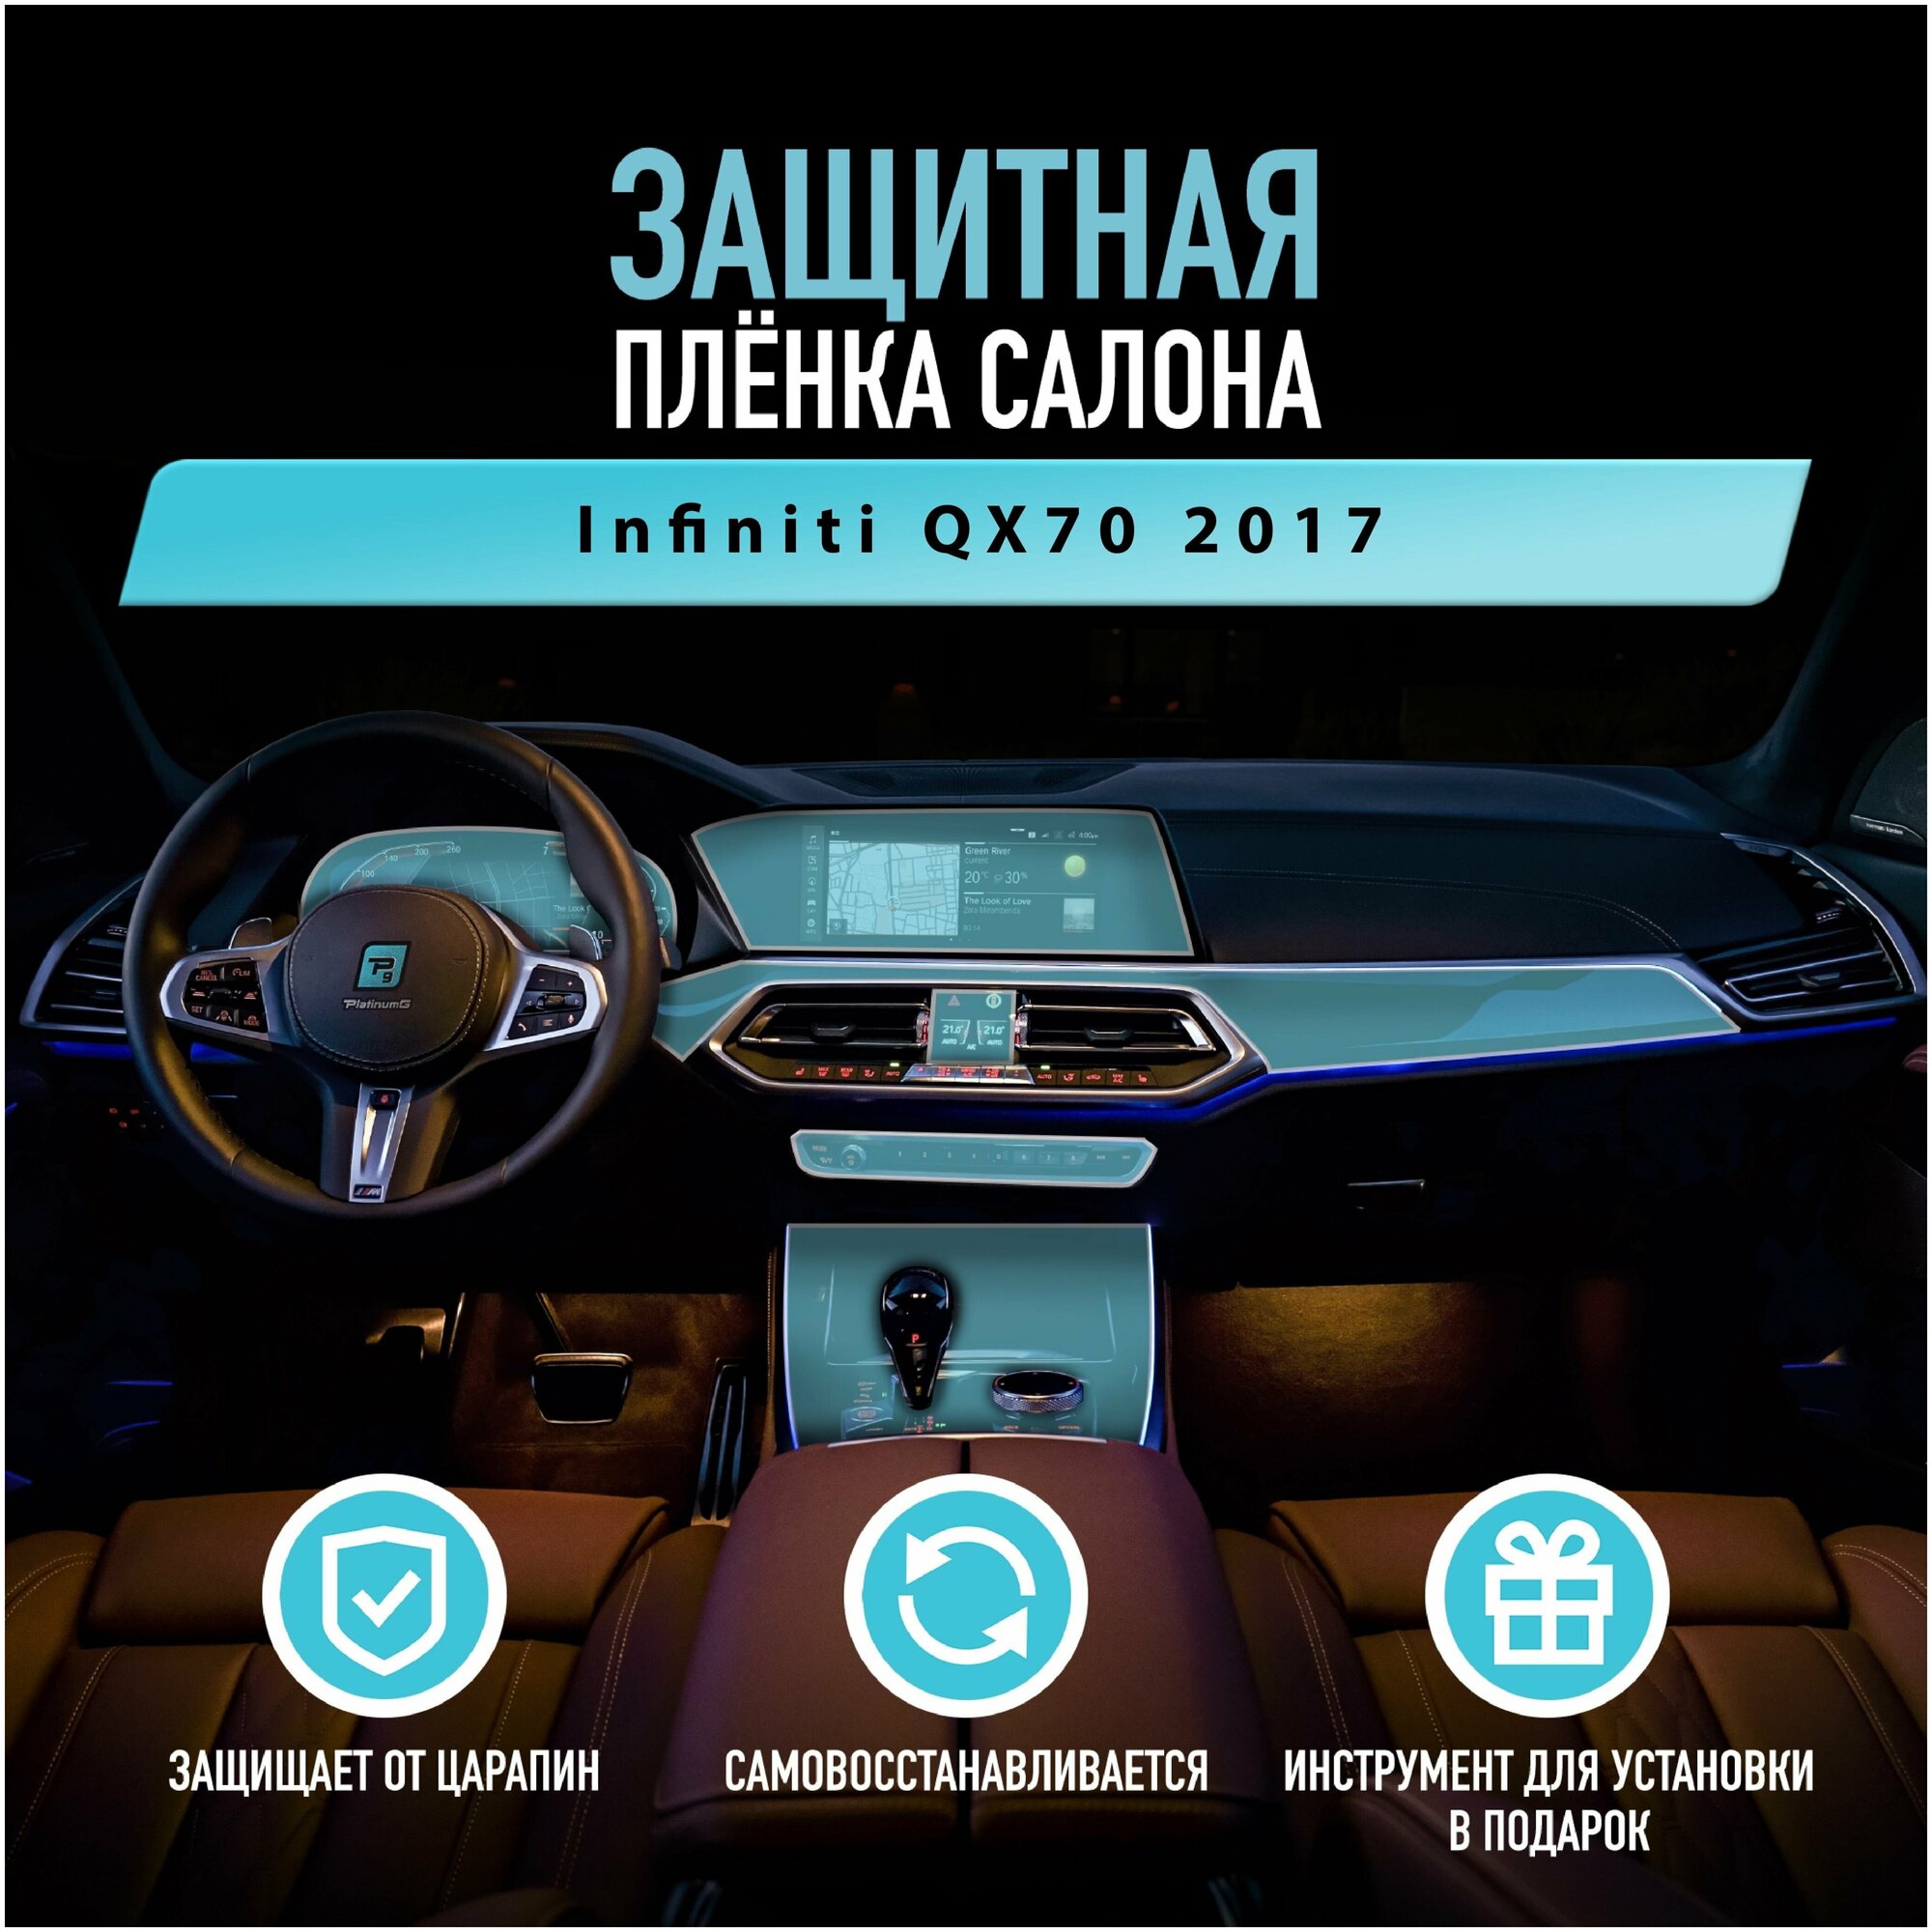 Защитная пленка для автомобиля Infiniti QX70 2017 Инфинити, полиуретановая антигравийная пленка для салона, глянцевая